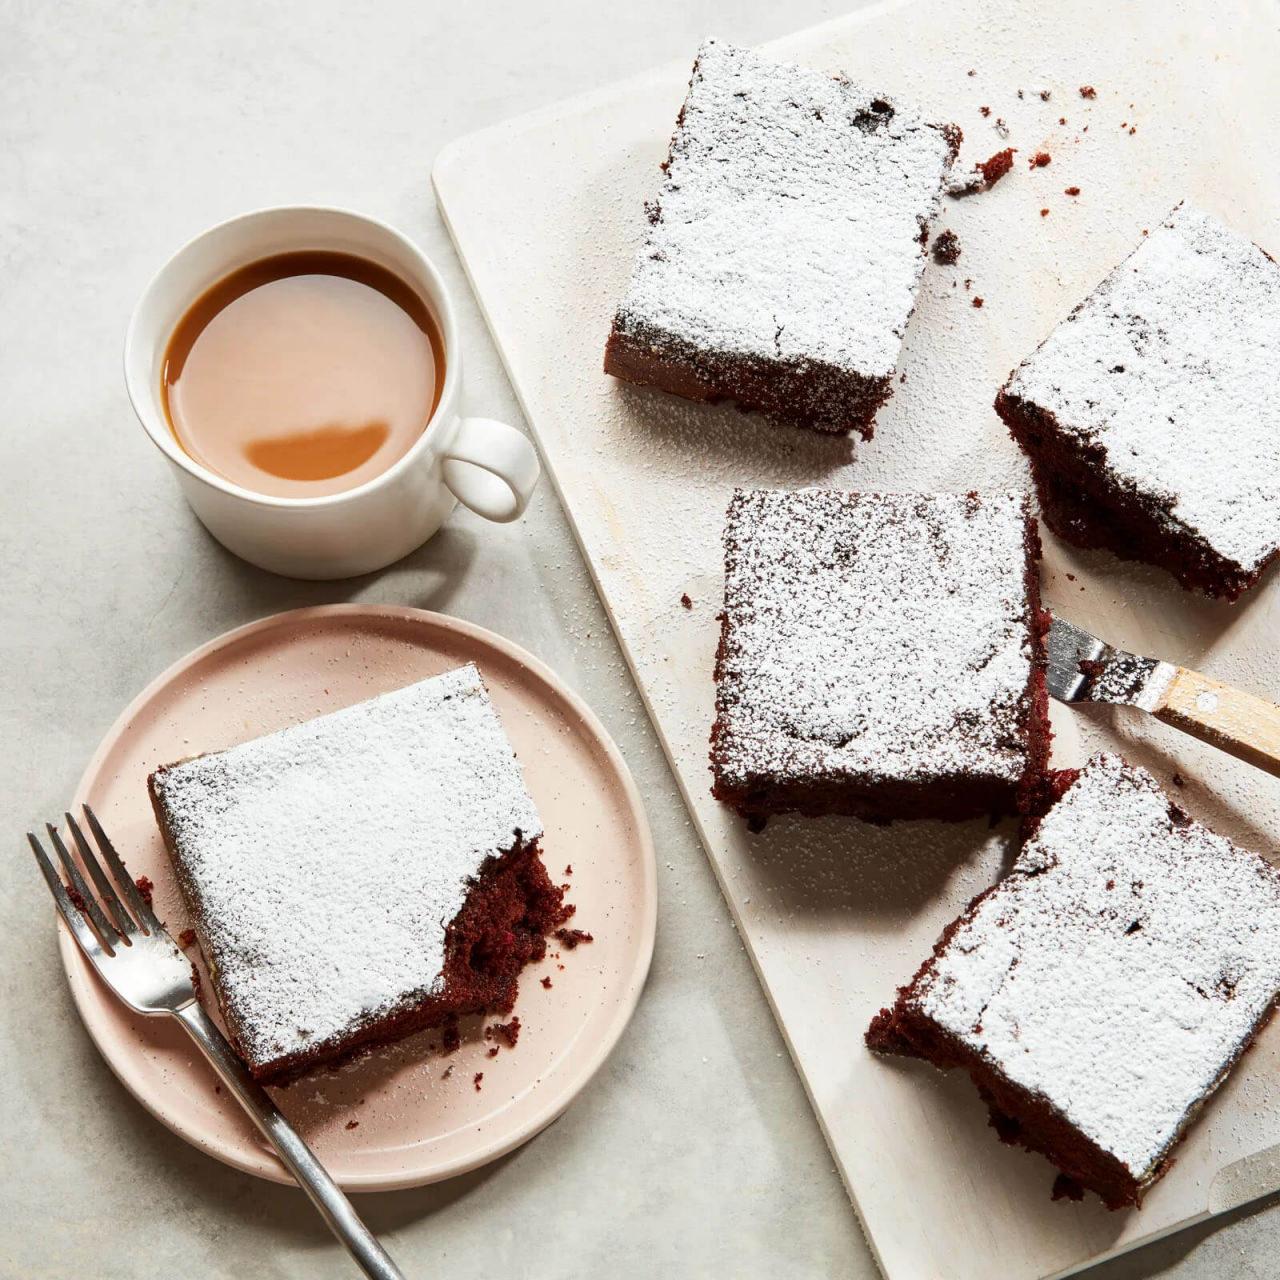 Çikolatalı vişneli kek tarifi, nasıl yapılır?